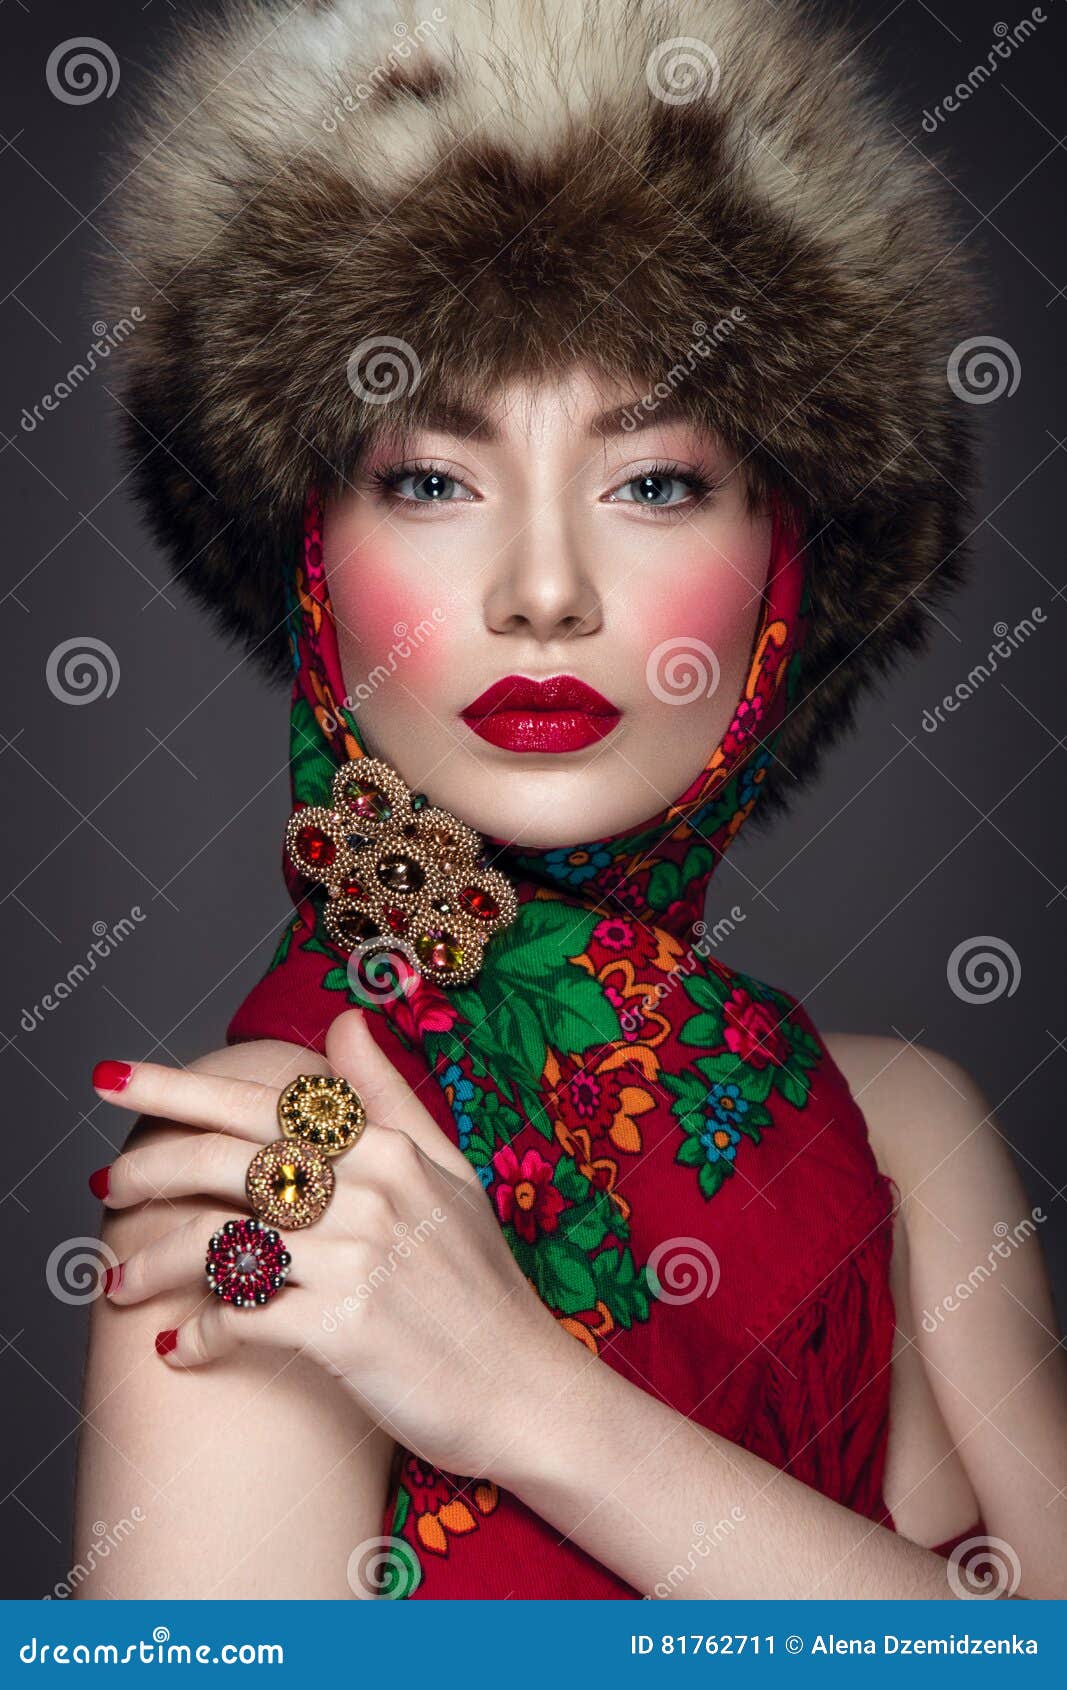 https://thumbs.dreamstime.com/z/beautiful-woman-portrait-russian-style-fur-hat-scarf-beauty-81762711.jpg